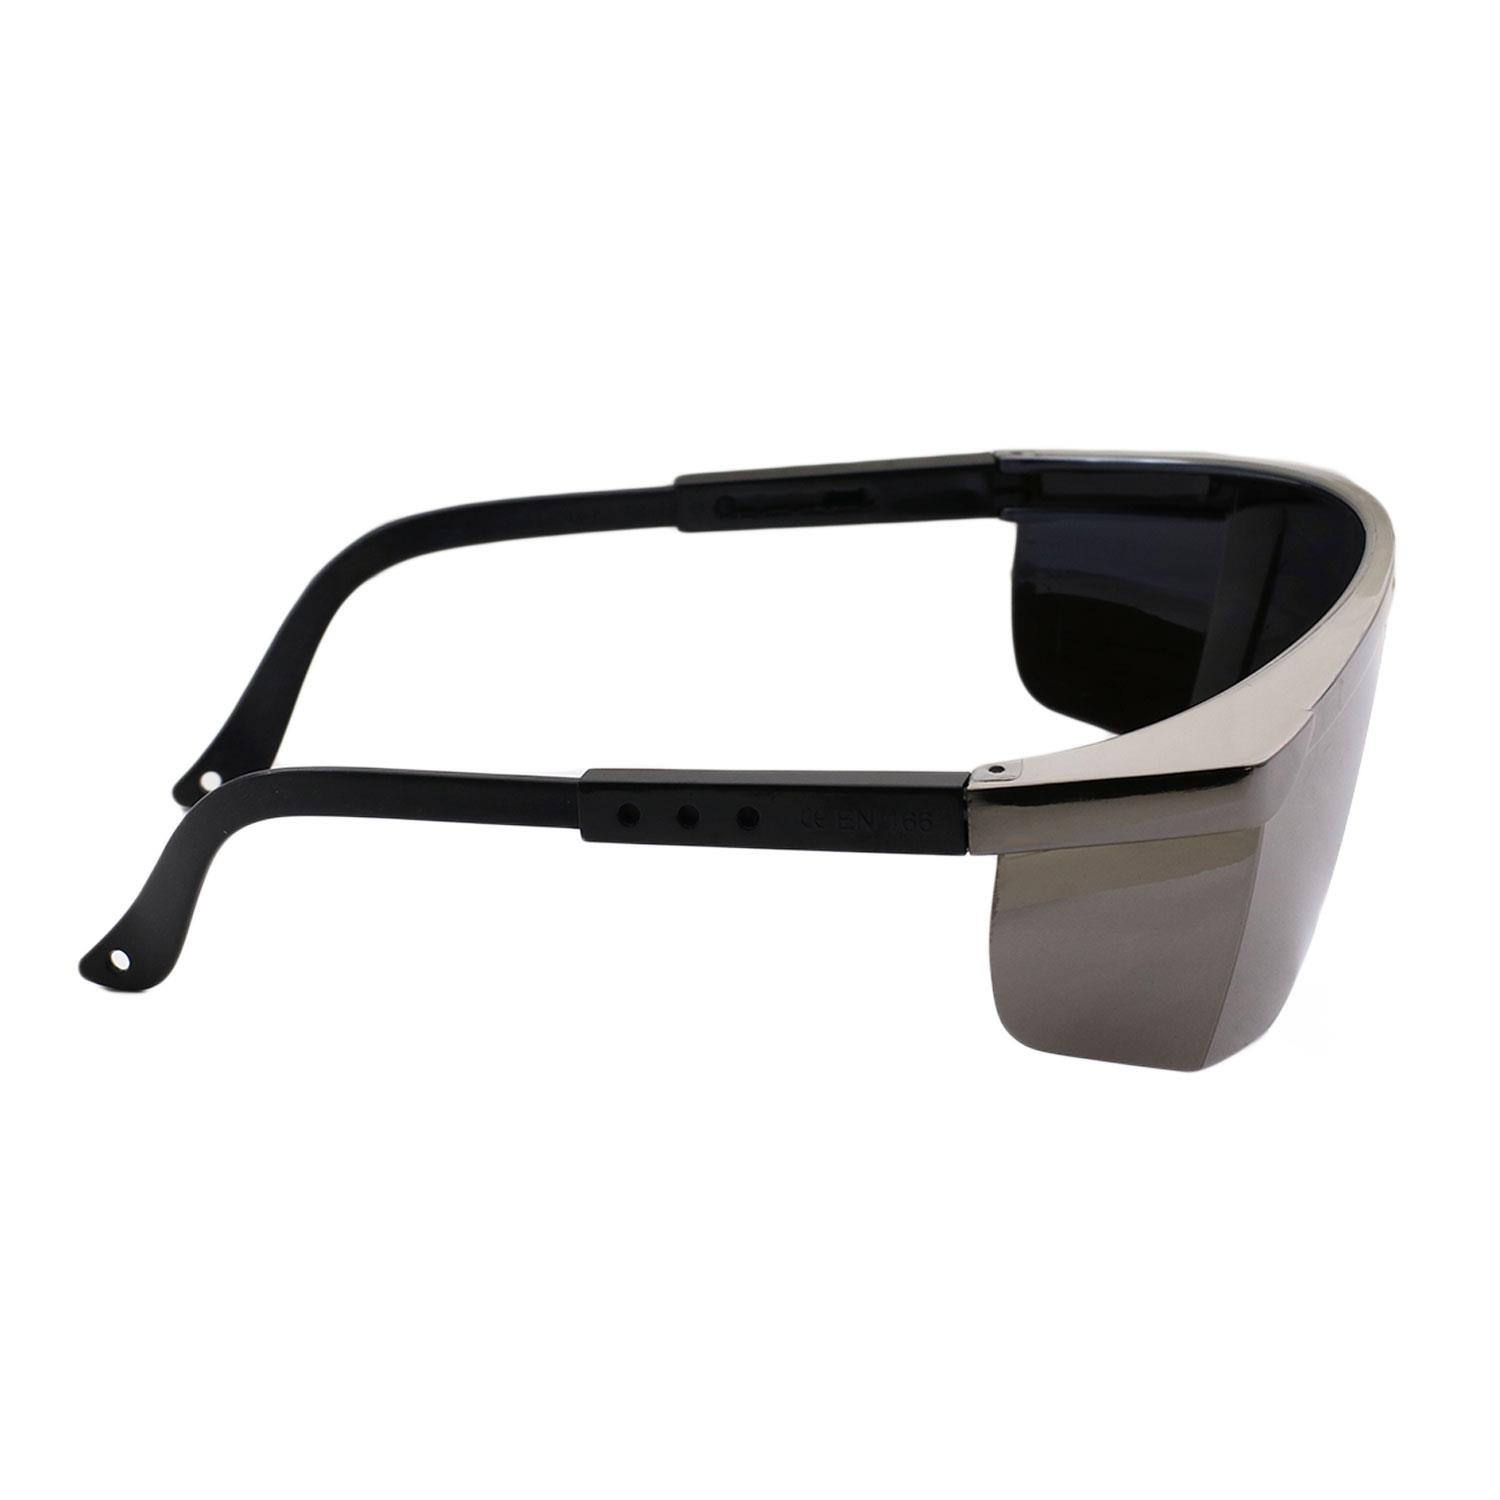 S400 İş Güvenlik Gözlüğü Antifog Buğulanmaz Kulak Ayarlı Koruyucu Gözlük Gümüş